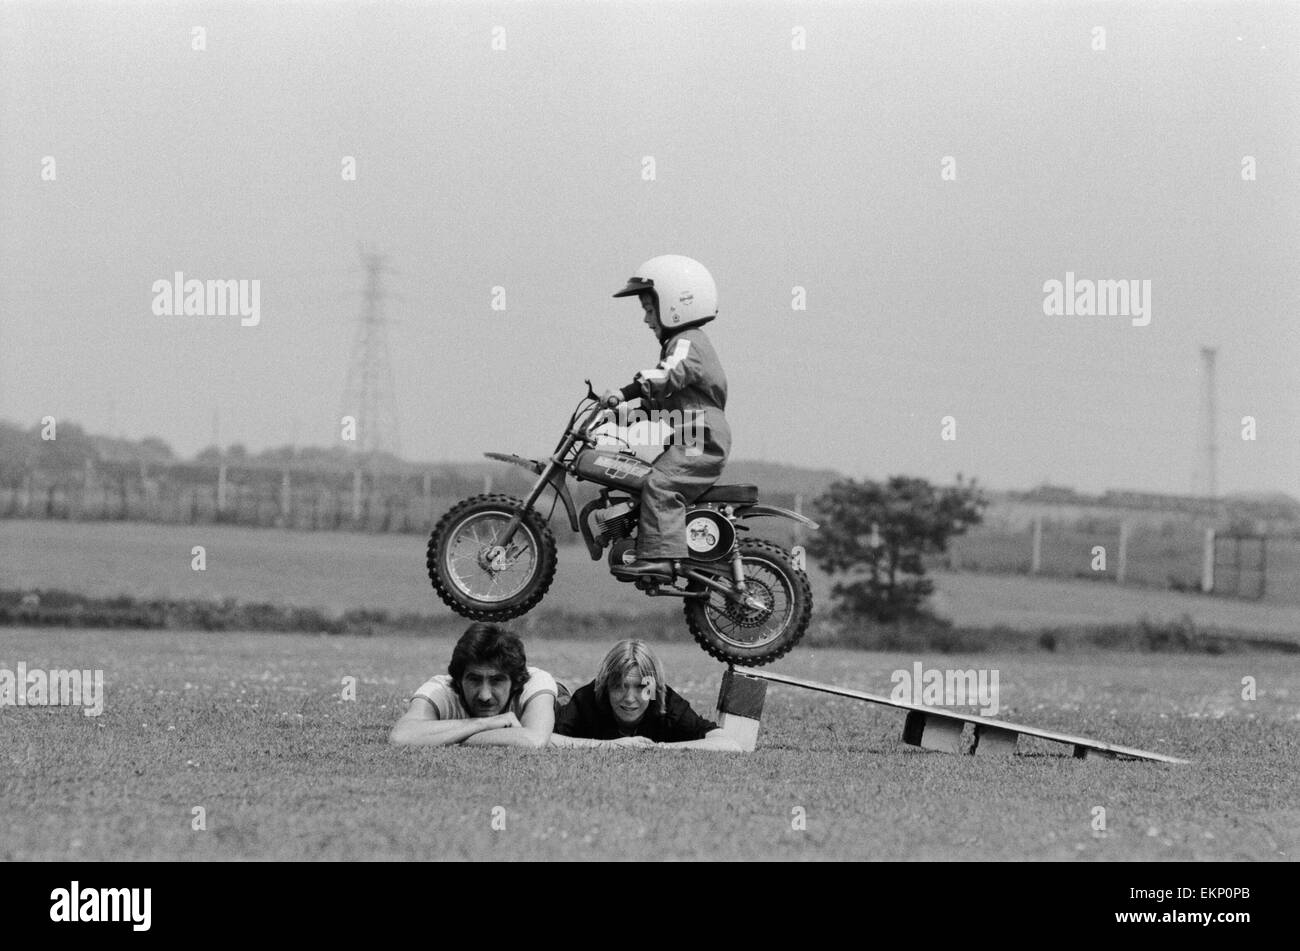 Quatre ans Jarno Barratt de Corby, Northamptonshire, exécute une cascade sur sa moto Italjet 50 cc, à l'aide de ses parents comme accessoires. 10 juin 1979. Banque D'Images